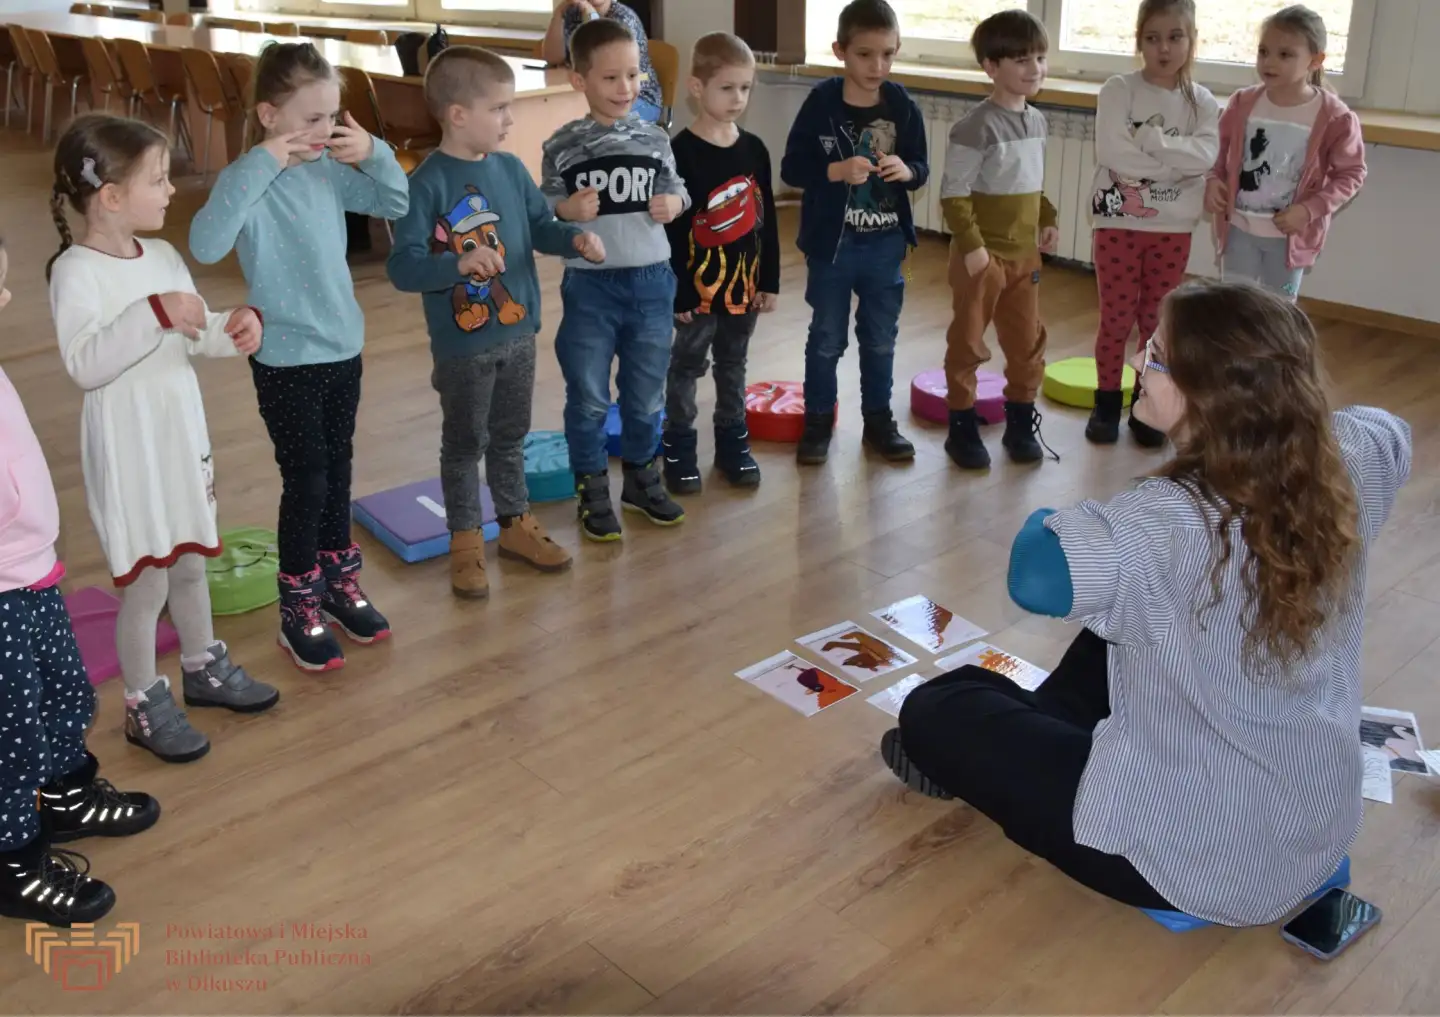 Zdjęcie zostało zrobione w trakcie Zabaw z książką po angielsku. Przedstawia grupę dzieci stojących przed siedzącą, dorosłą kobietą. Grupa pokazuje różne gesty.